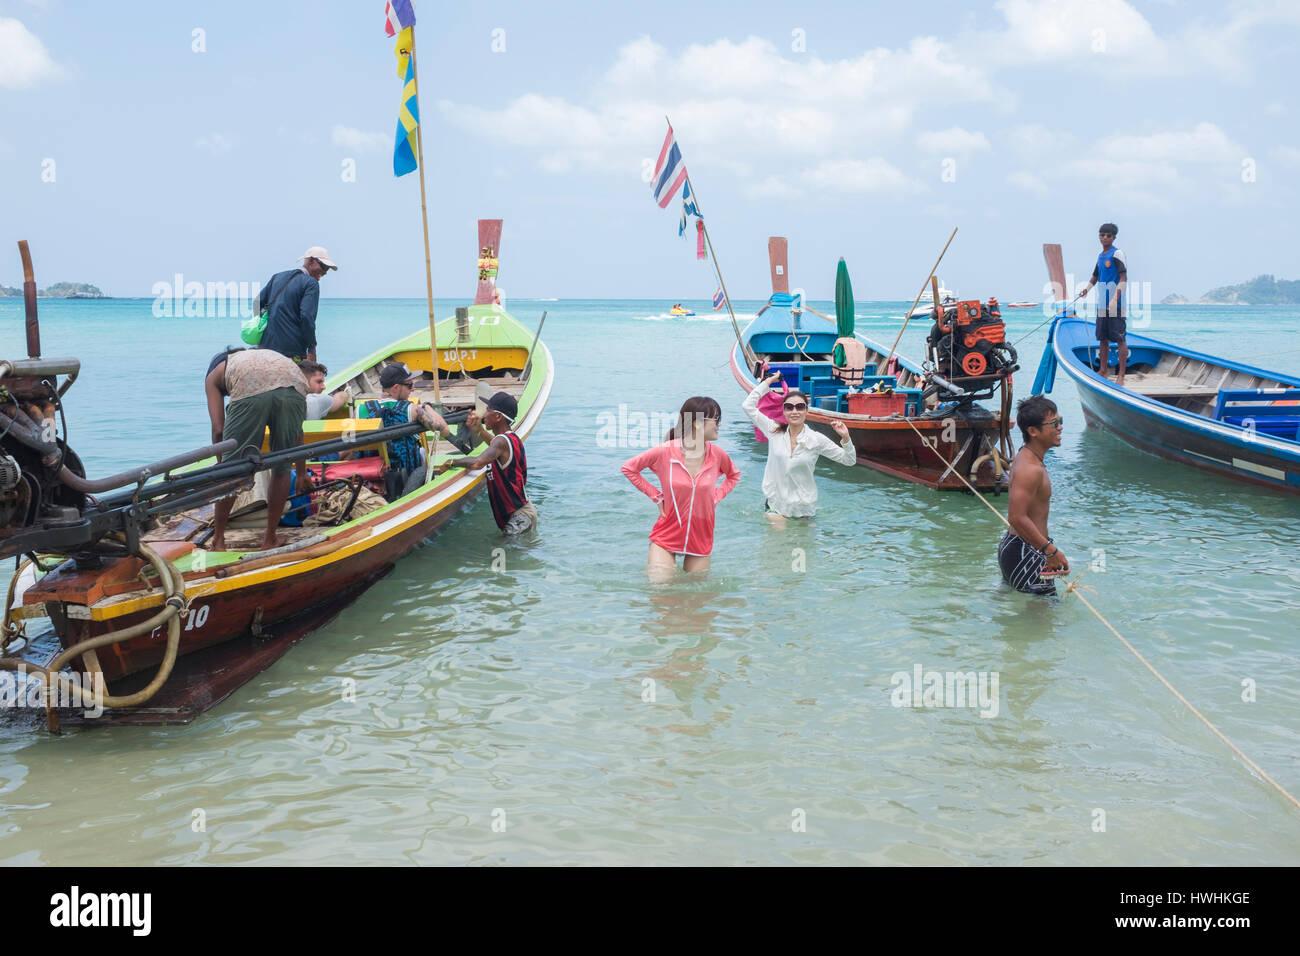 Boat tour at Patong beach, Phuket, Thailand. 03-Mar-2017 Stock Photo